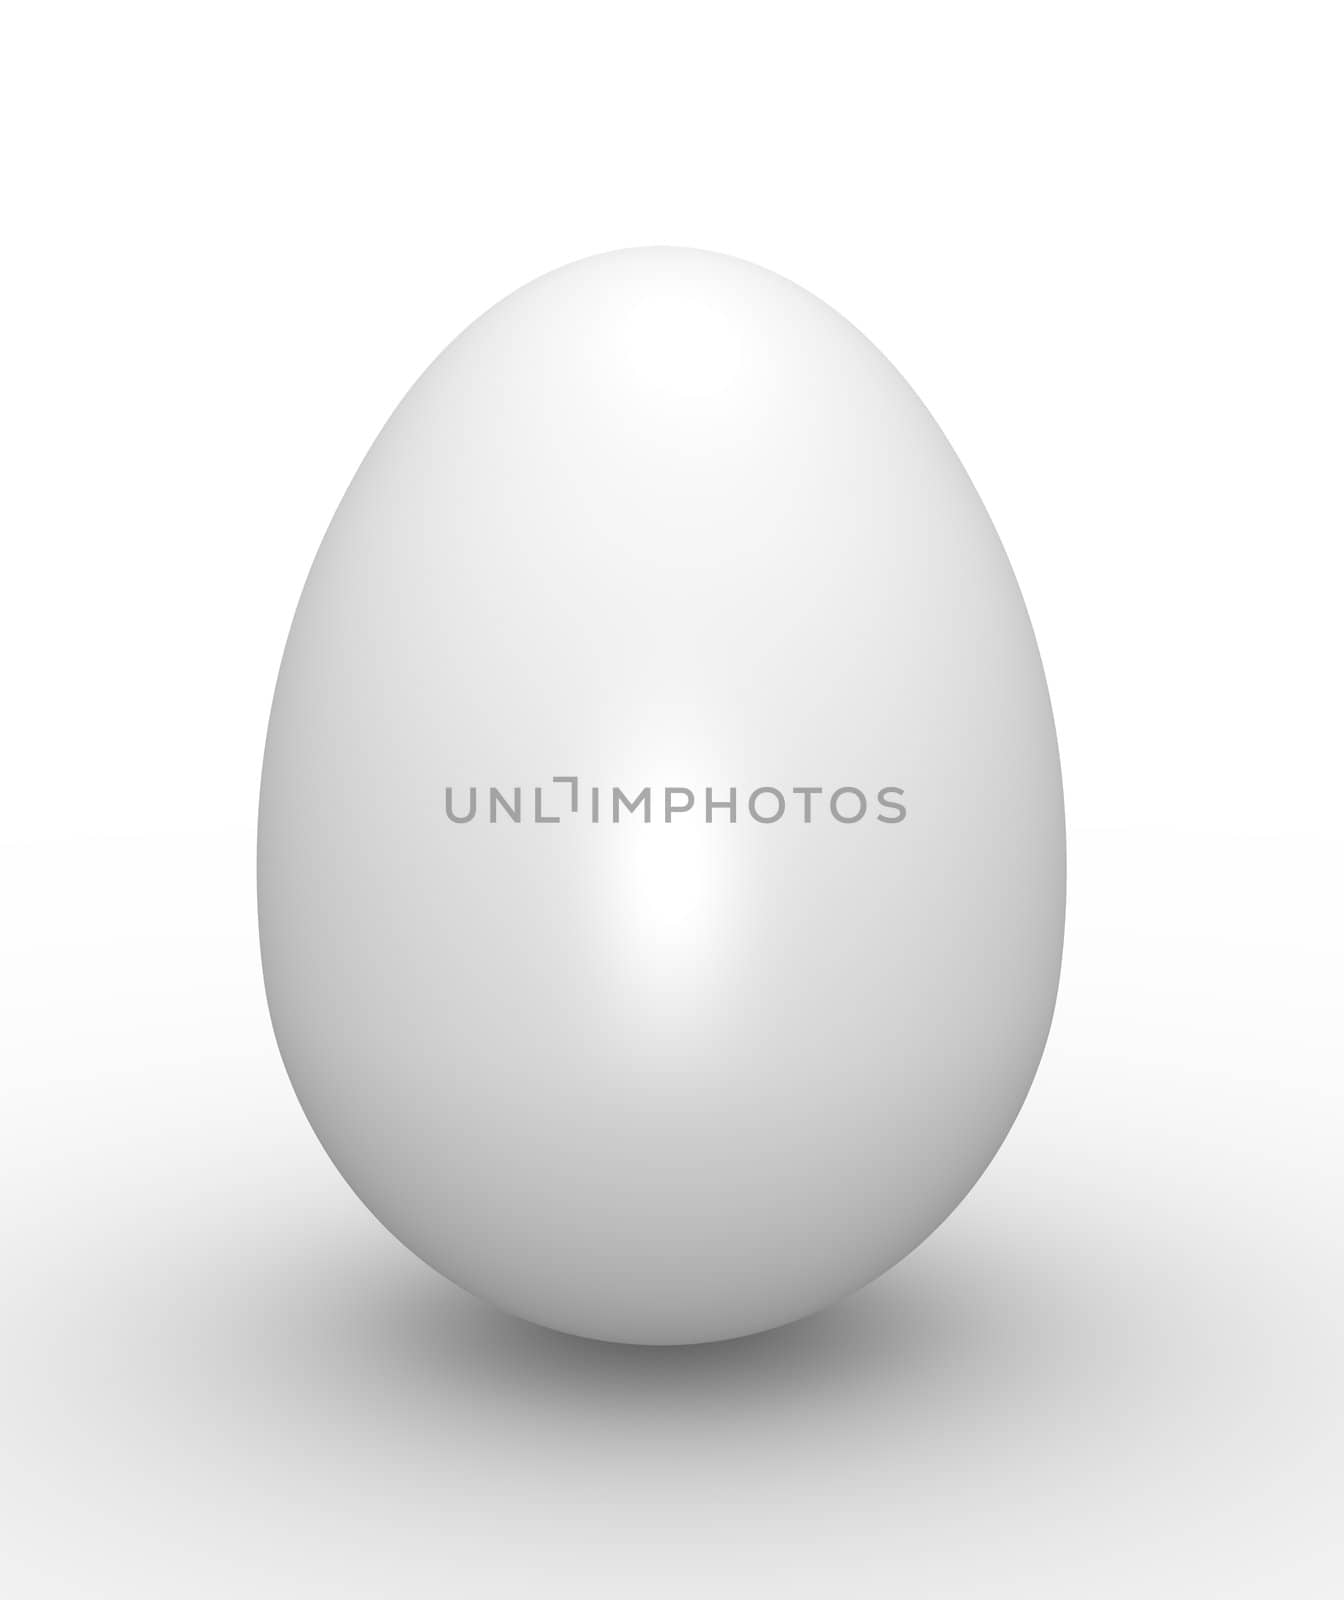 White egg. High quality 3D rendered illustration.
